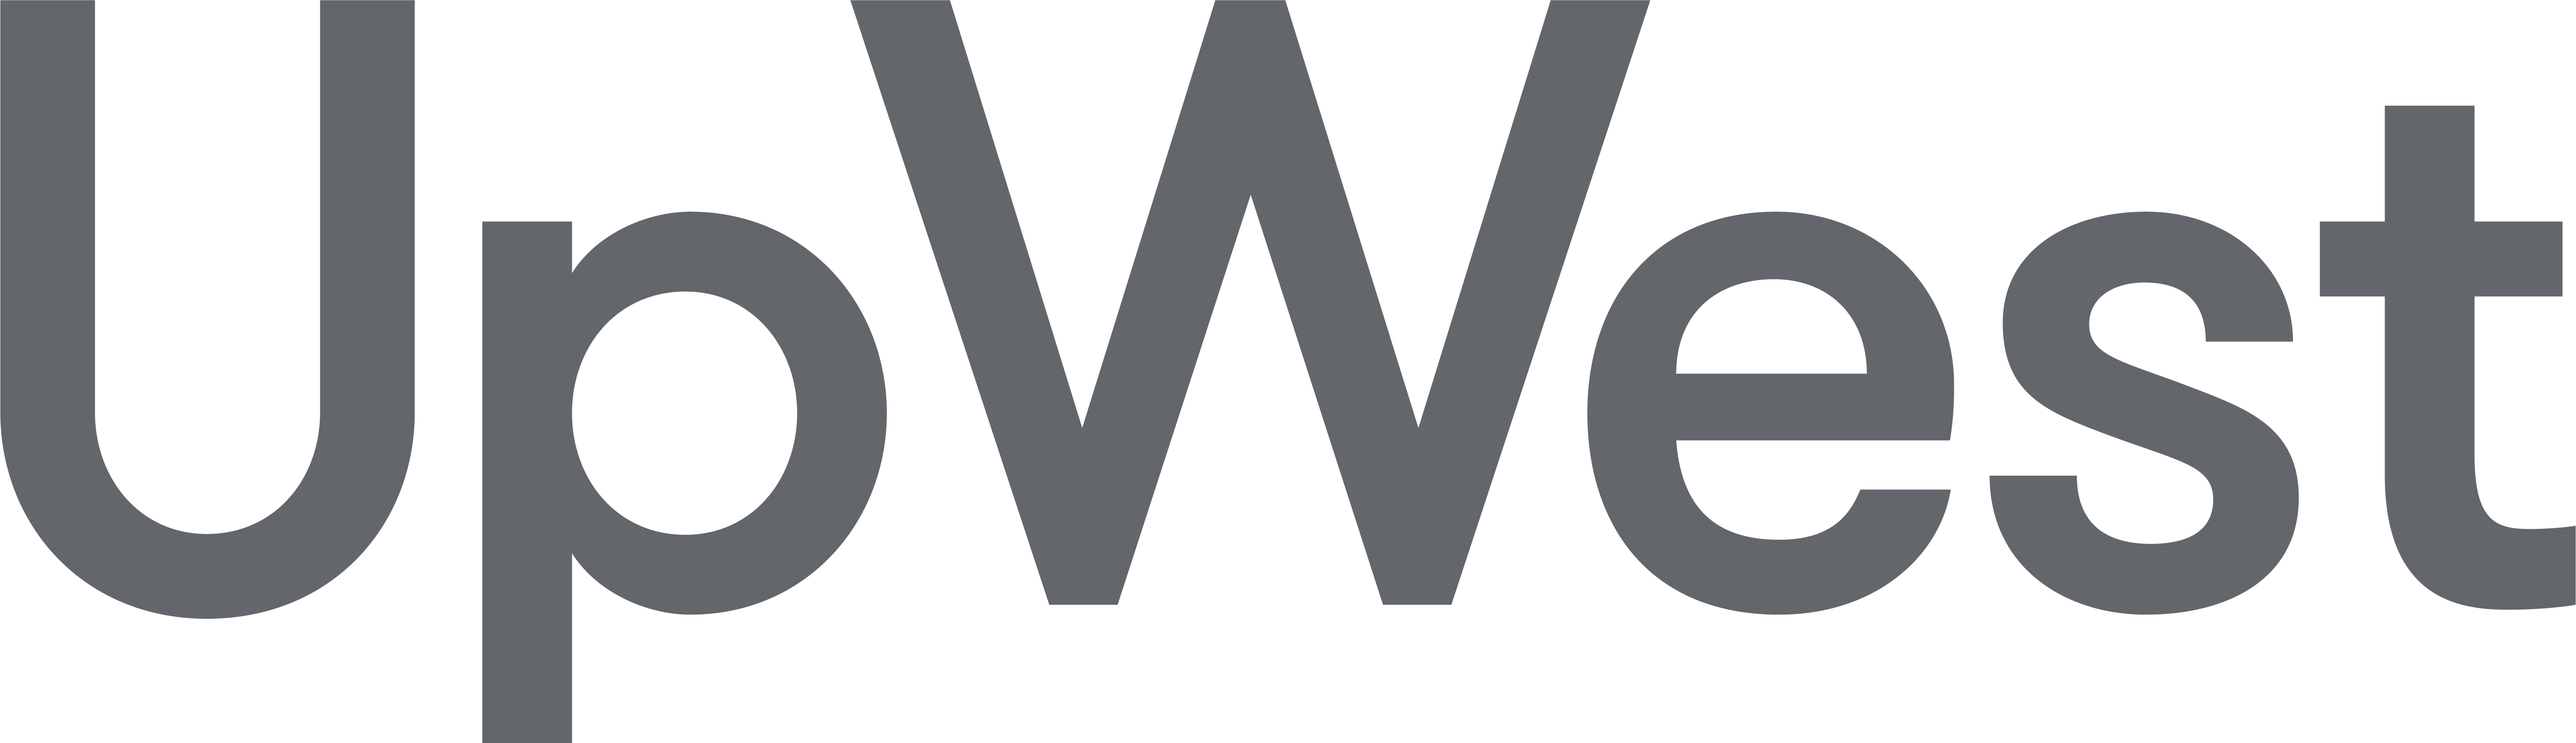 Upwest Logo